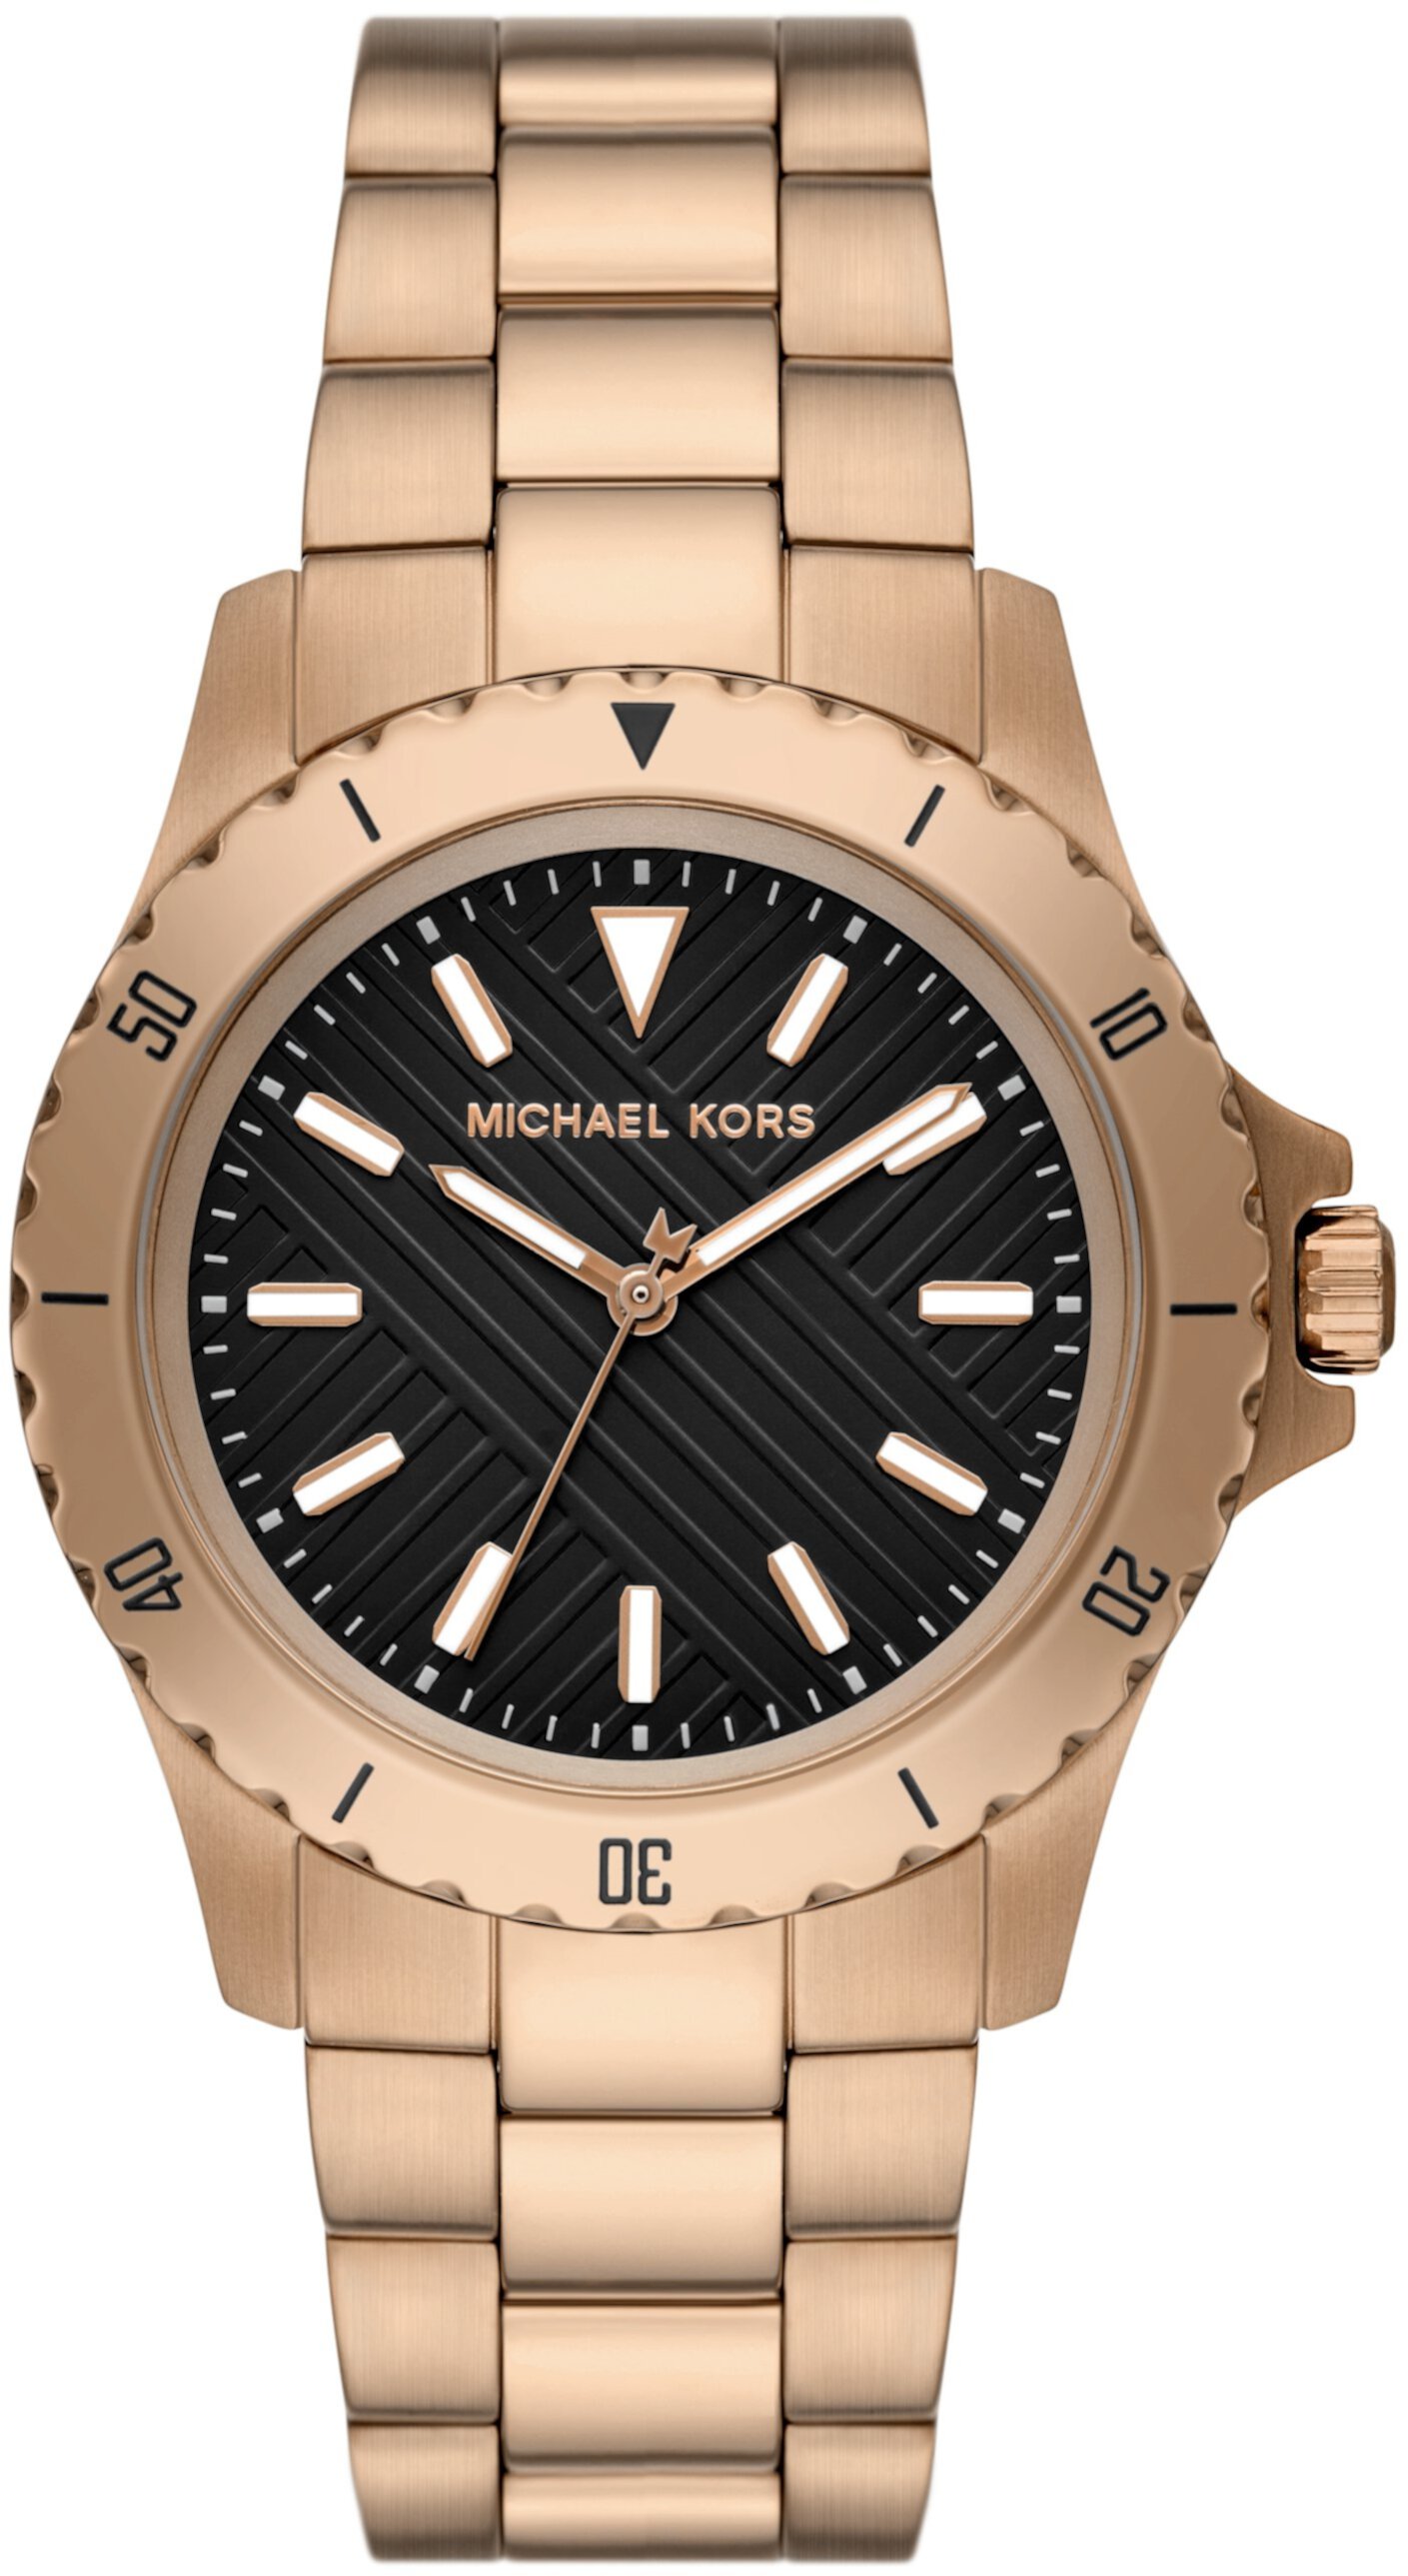 MK9140 — Тонкие часы Everest с тремя стрелками Michael Kors